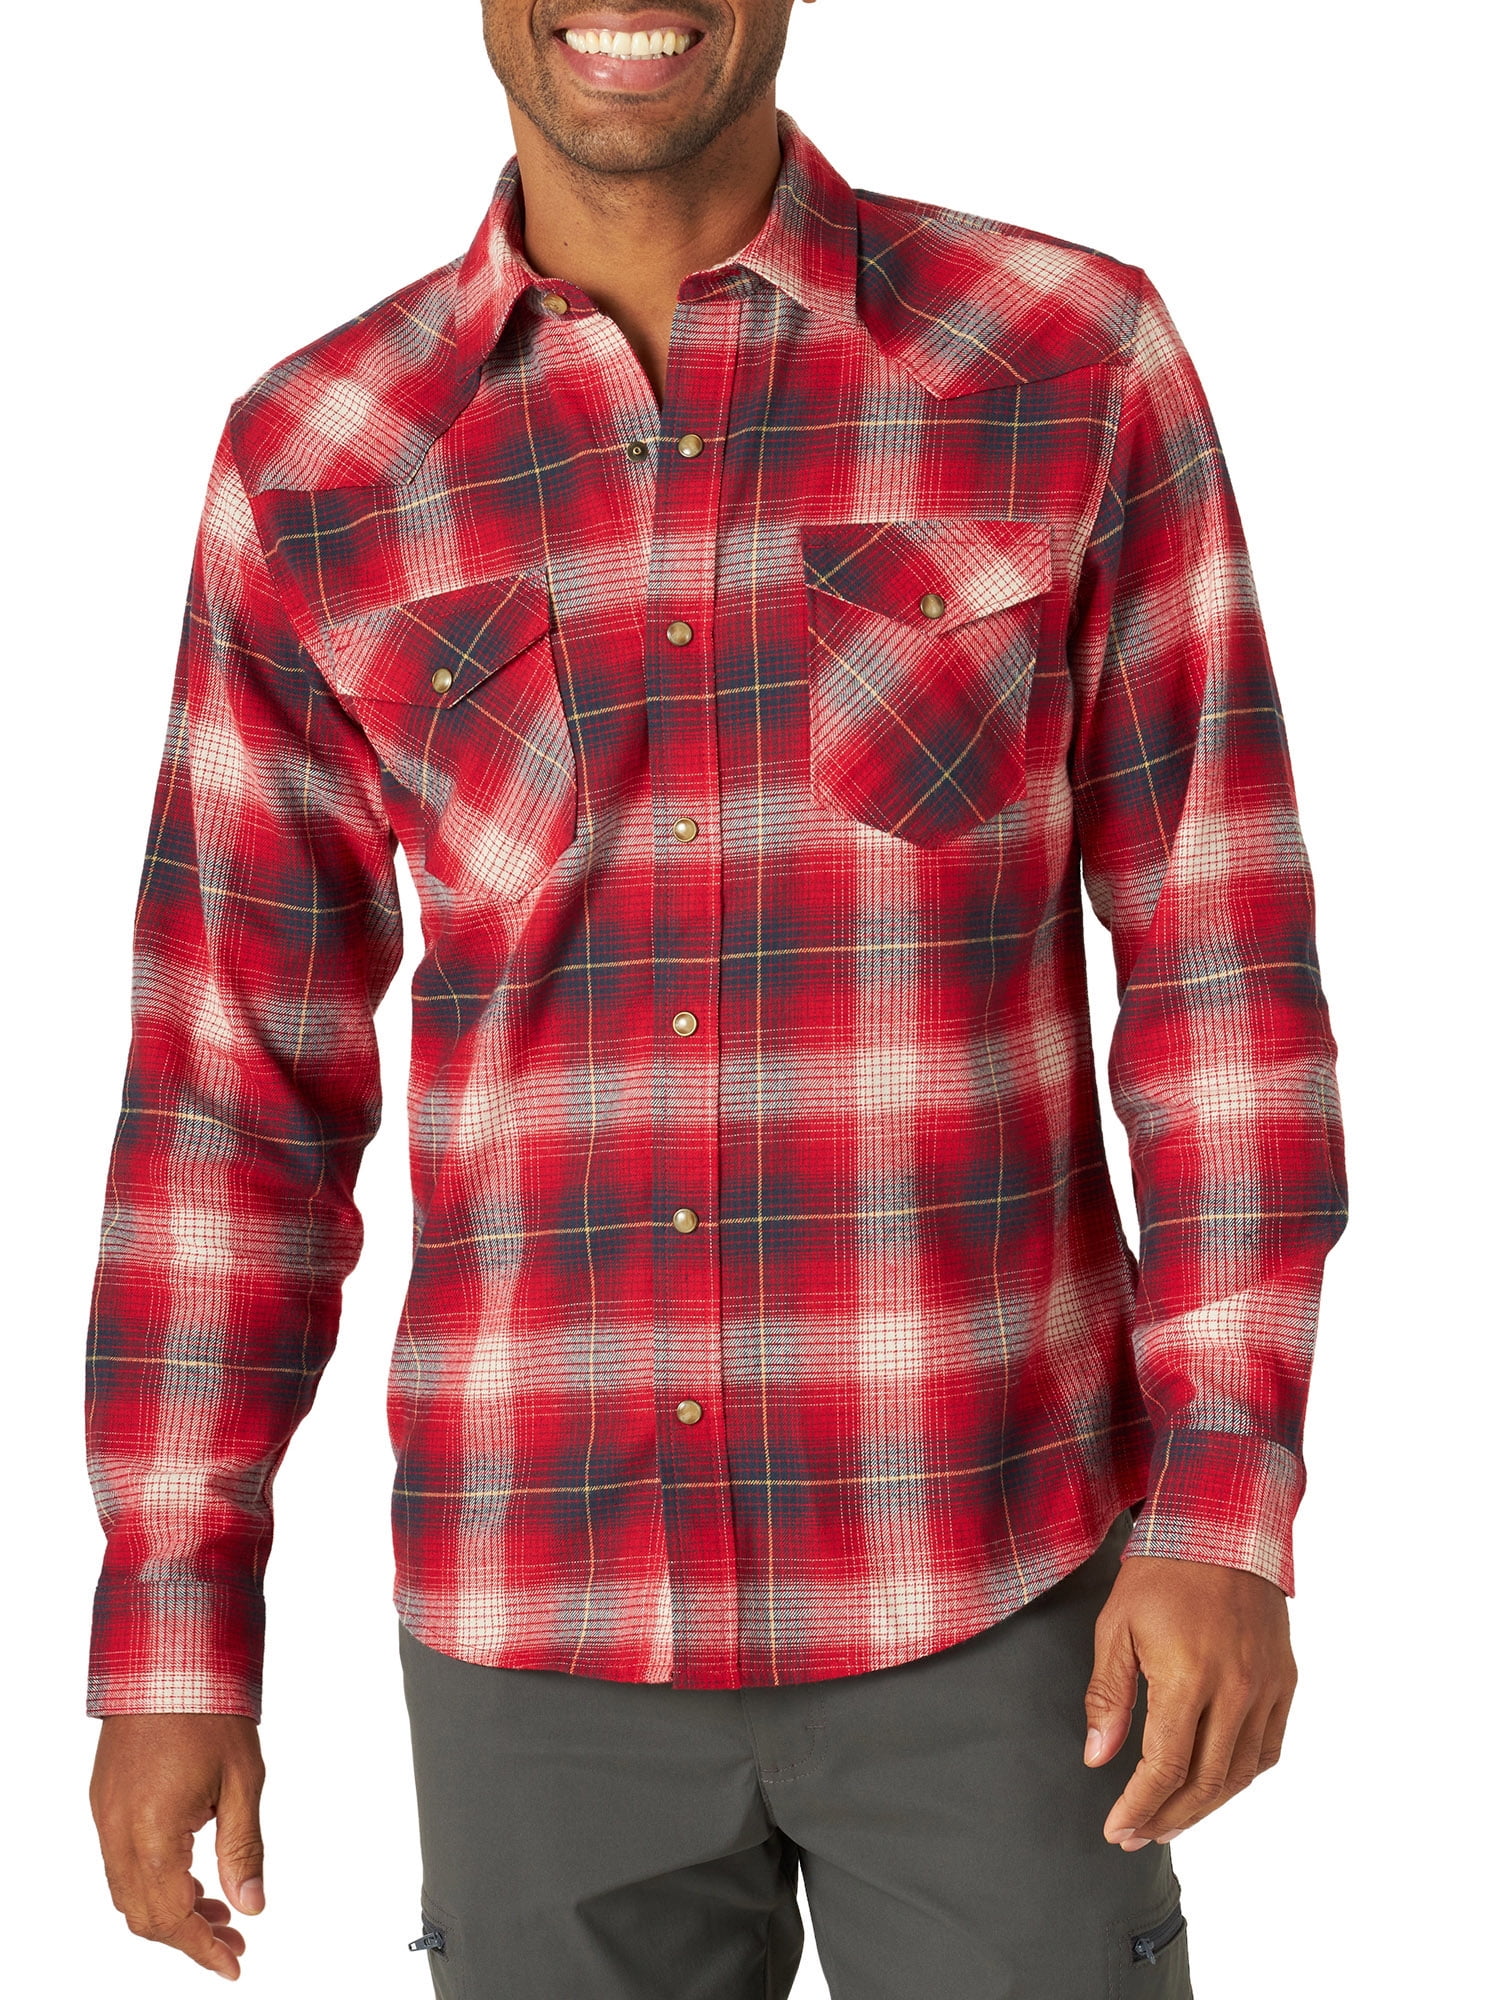 Wrangler Men's Long Sleeve Flannel Shirt 